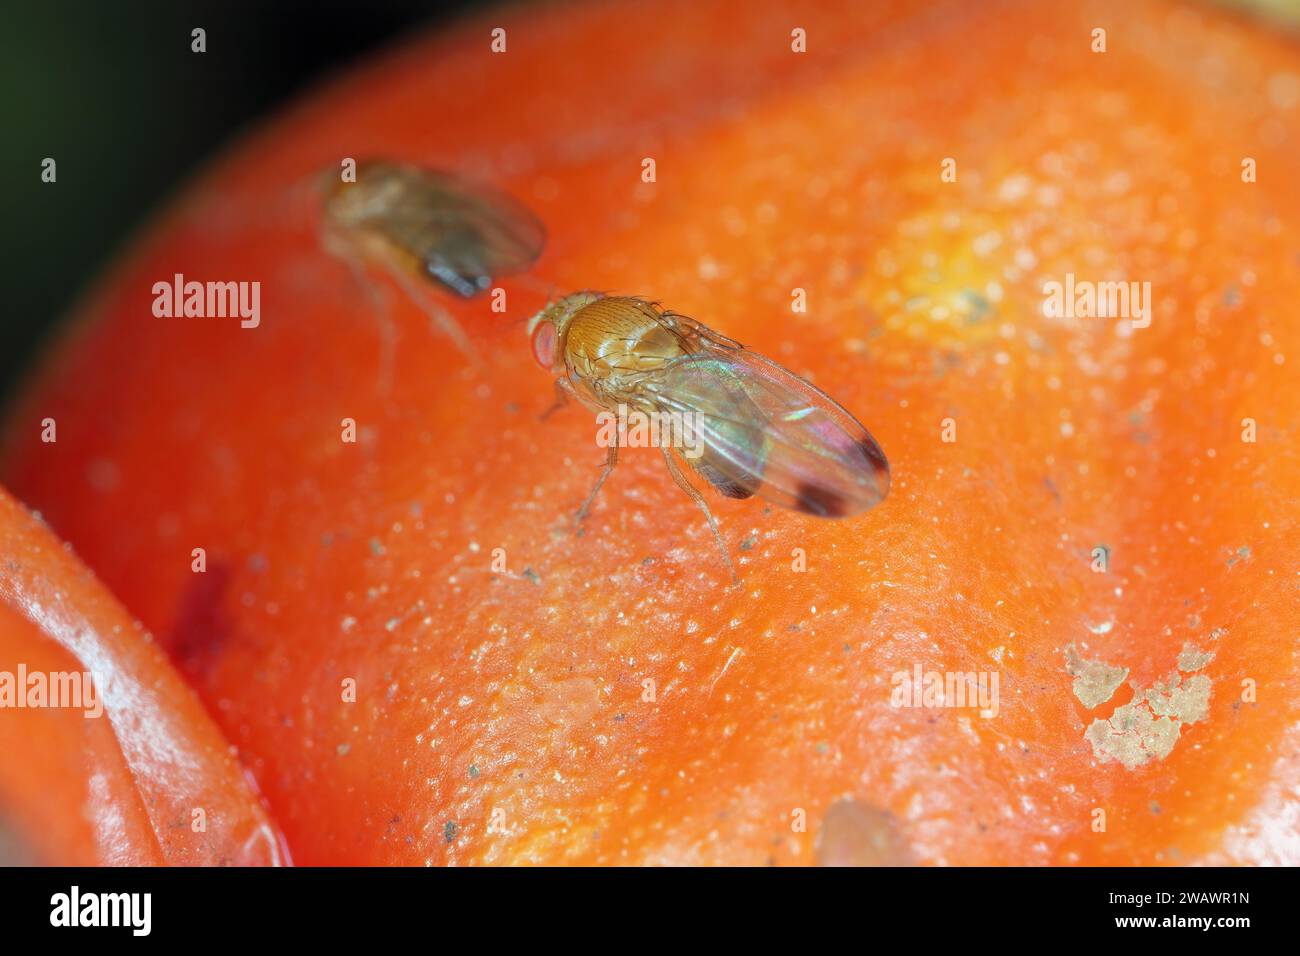 la drosophile aux cerises est également appelée drosophila à ailes tachetées (Drosophila suzukii). Ravageur économiquement important de divers fruits. Insectes sur un tom infesté Banque D'Images